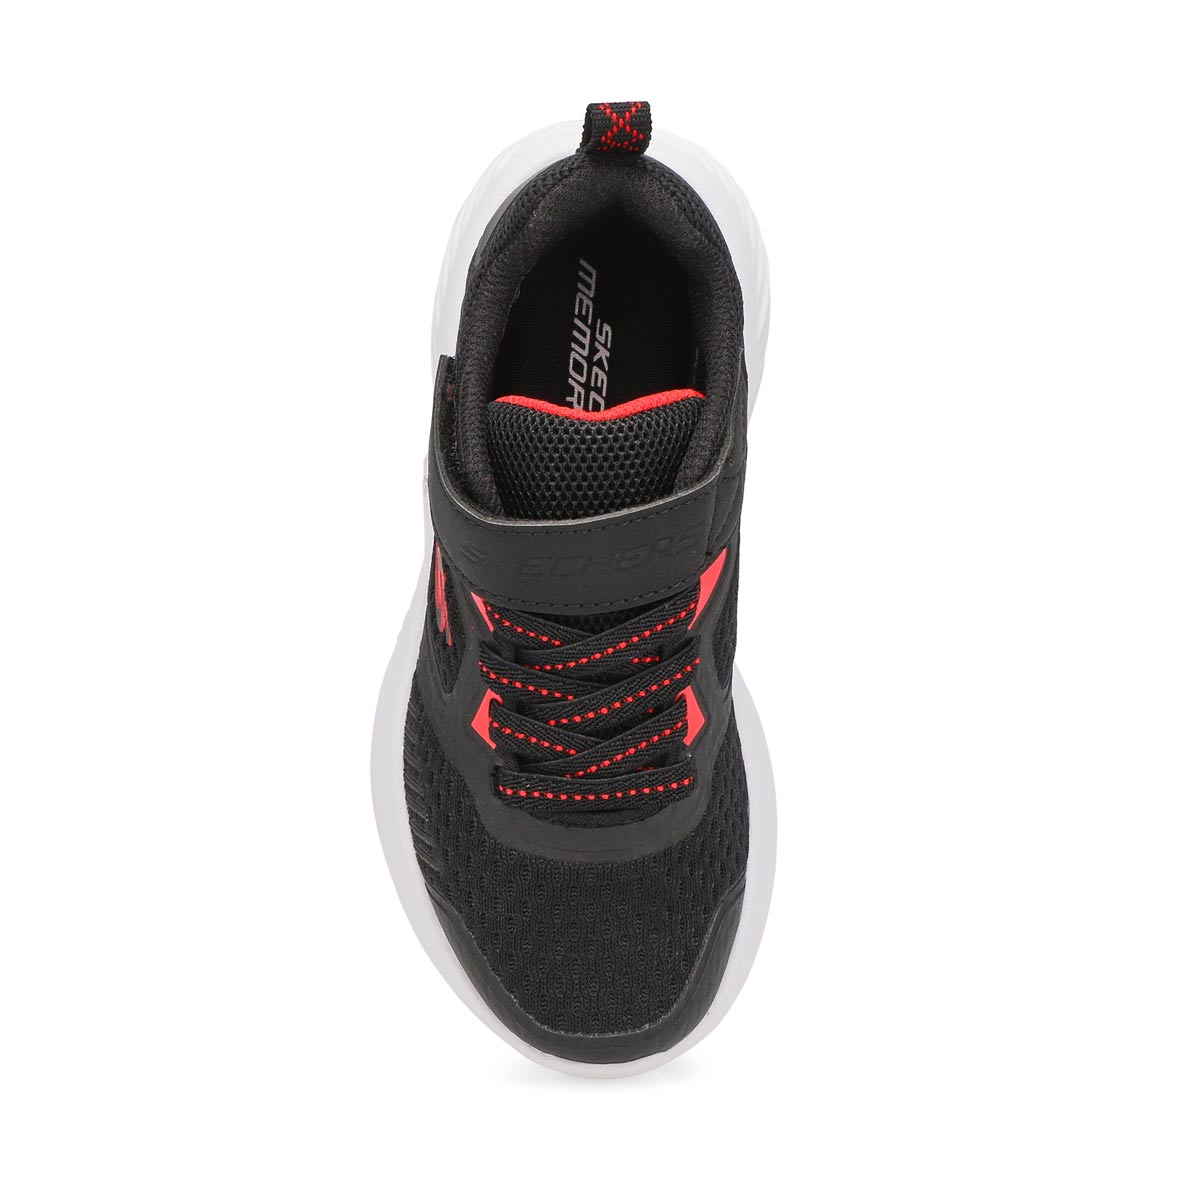 Boys' Bounder Sneaker - Black/ Red